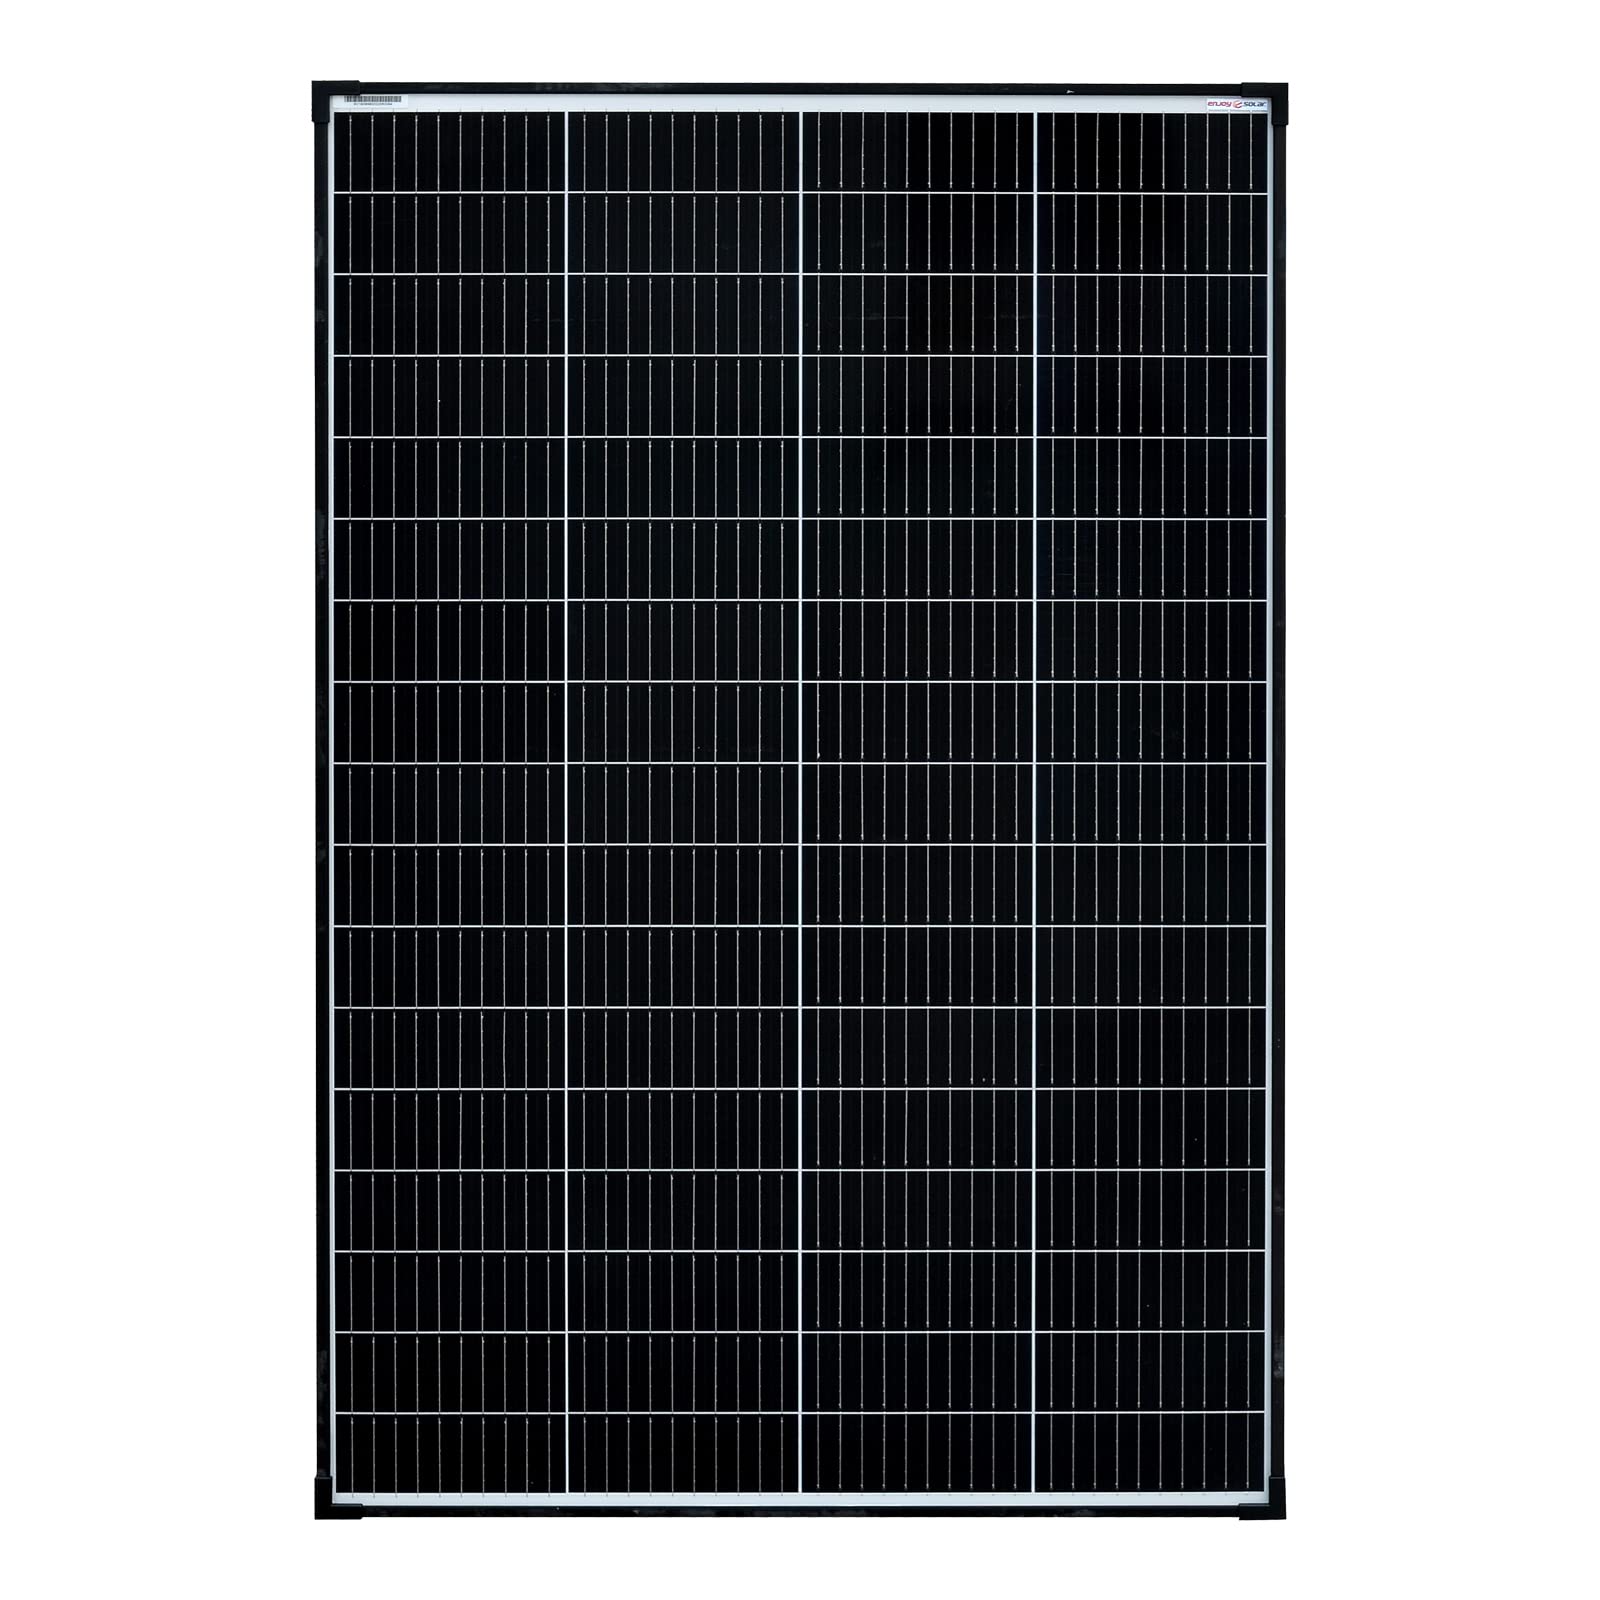 enjoy solar 180W 12V Monokristallines Solarmodul, 182mm Solarzellen 10 Busbars Solarpanel ideal für Wohnmobil, Balkonanlage, Gartenhäuse, Boot